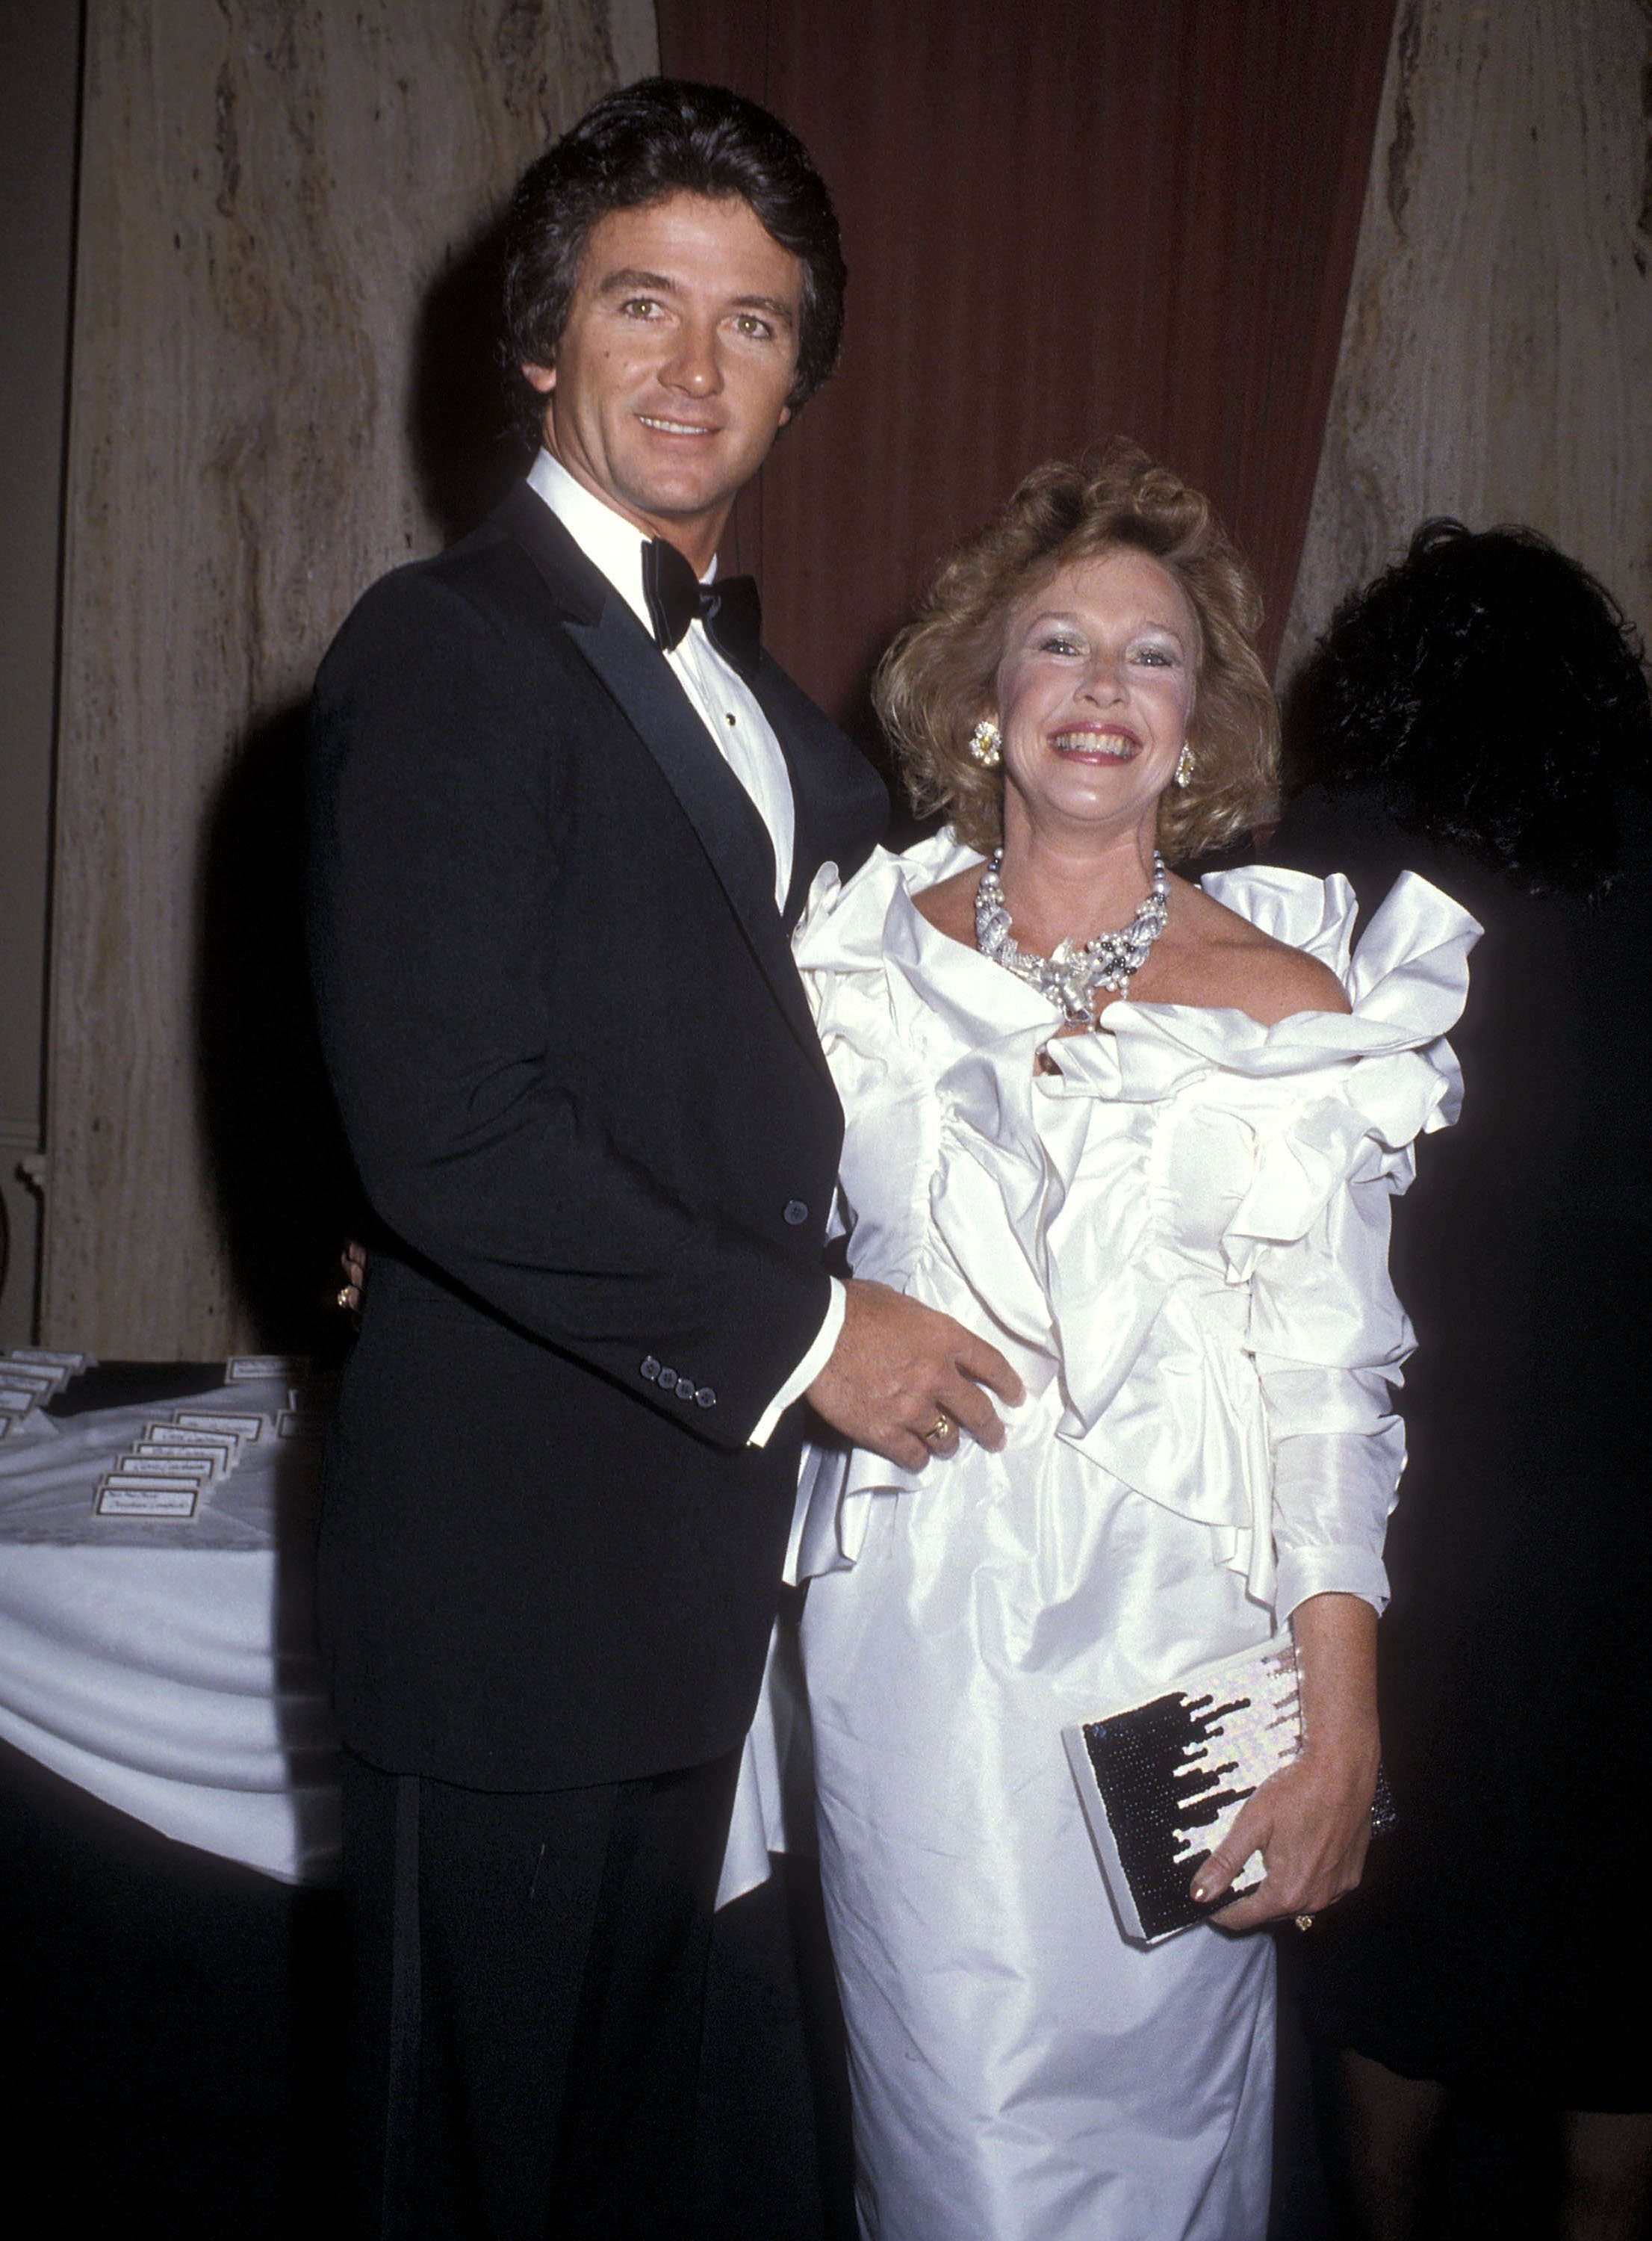 Patrick Duffy y su esposa Carlyn Rosser en Aaron Spelling y Douglas S. Cramer organizan una fiesta para revelar la estrella invitada número 1000 de "The Love Boat" el 31 de marzo de 1985 en Beverly Hills, California | Foto: Getty Images